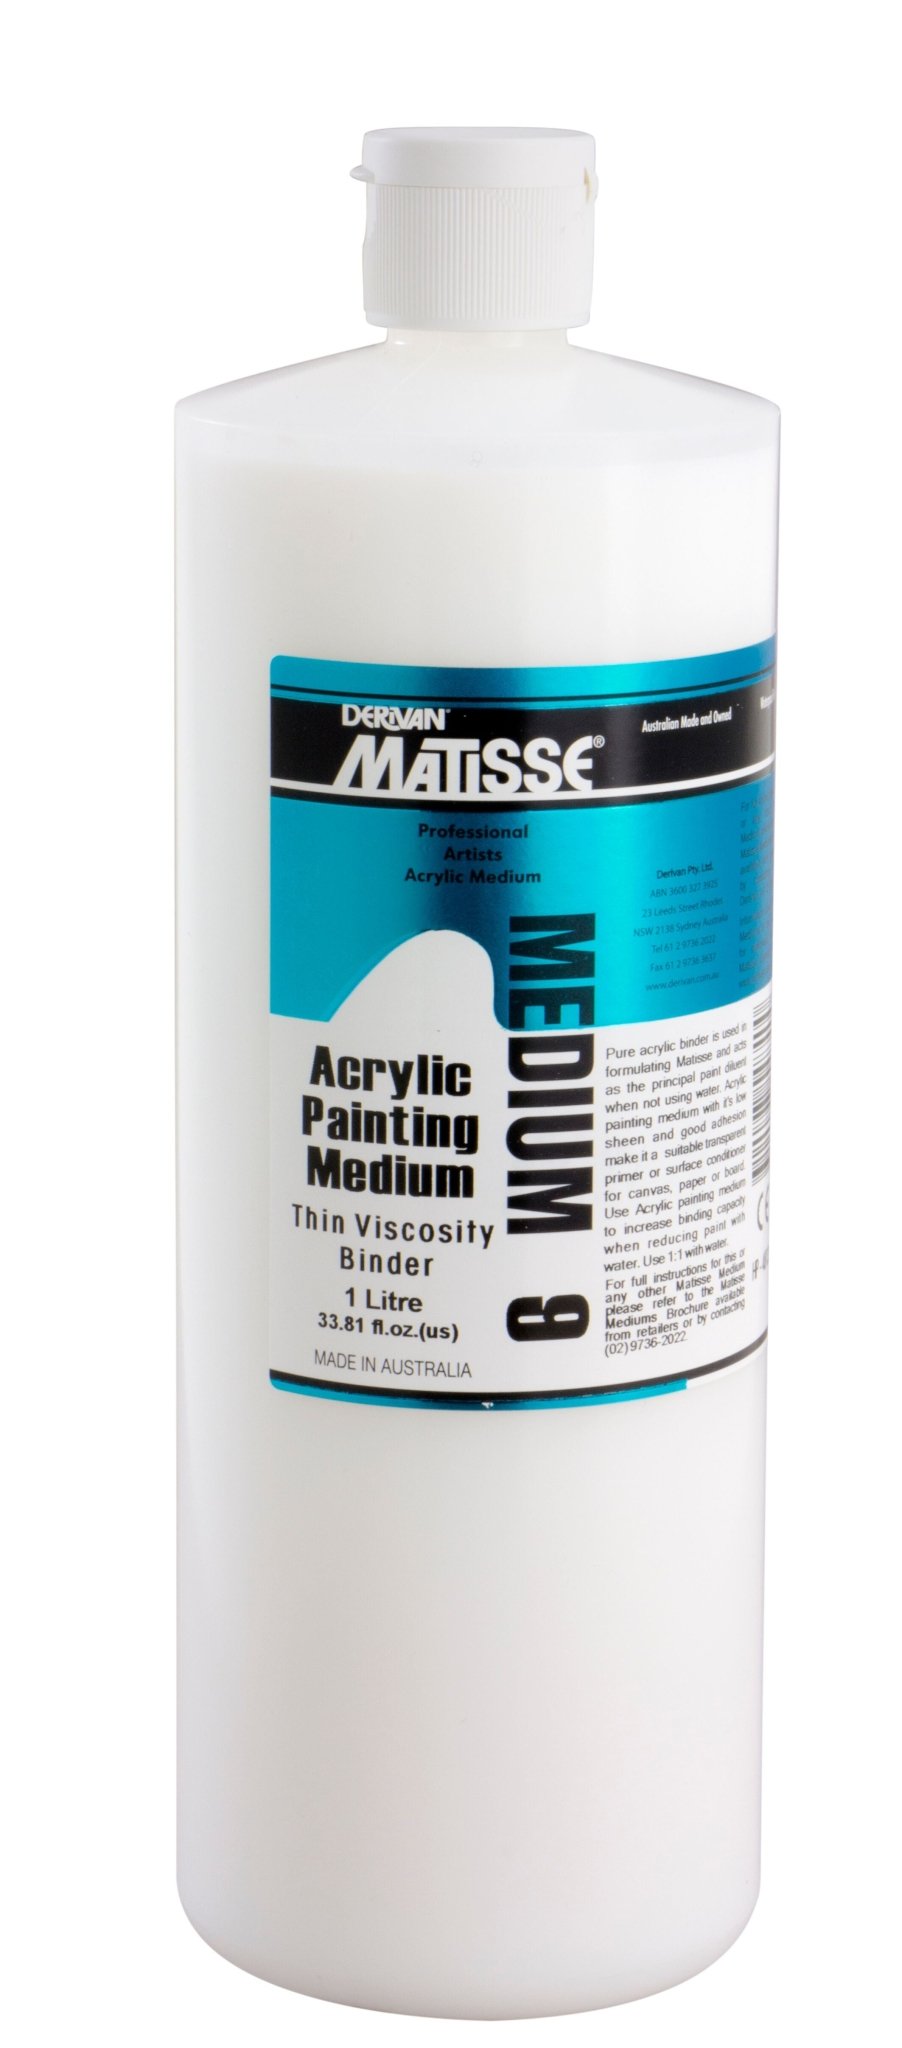 Matisse Acrylic Painting Medium 1 Litre - theartshop.com.au